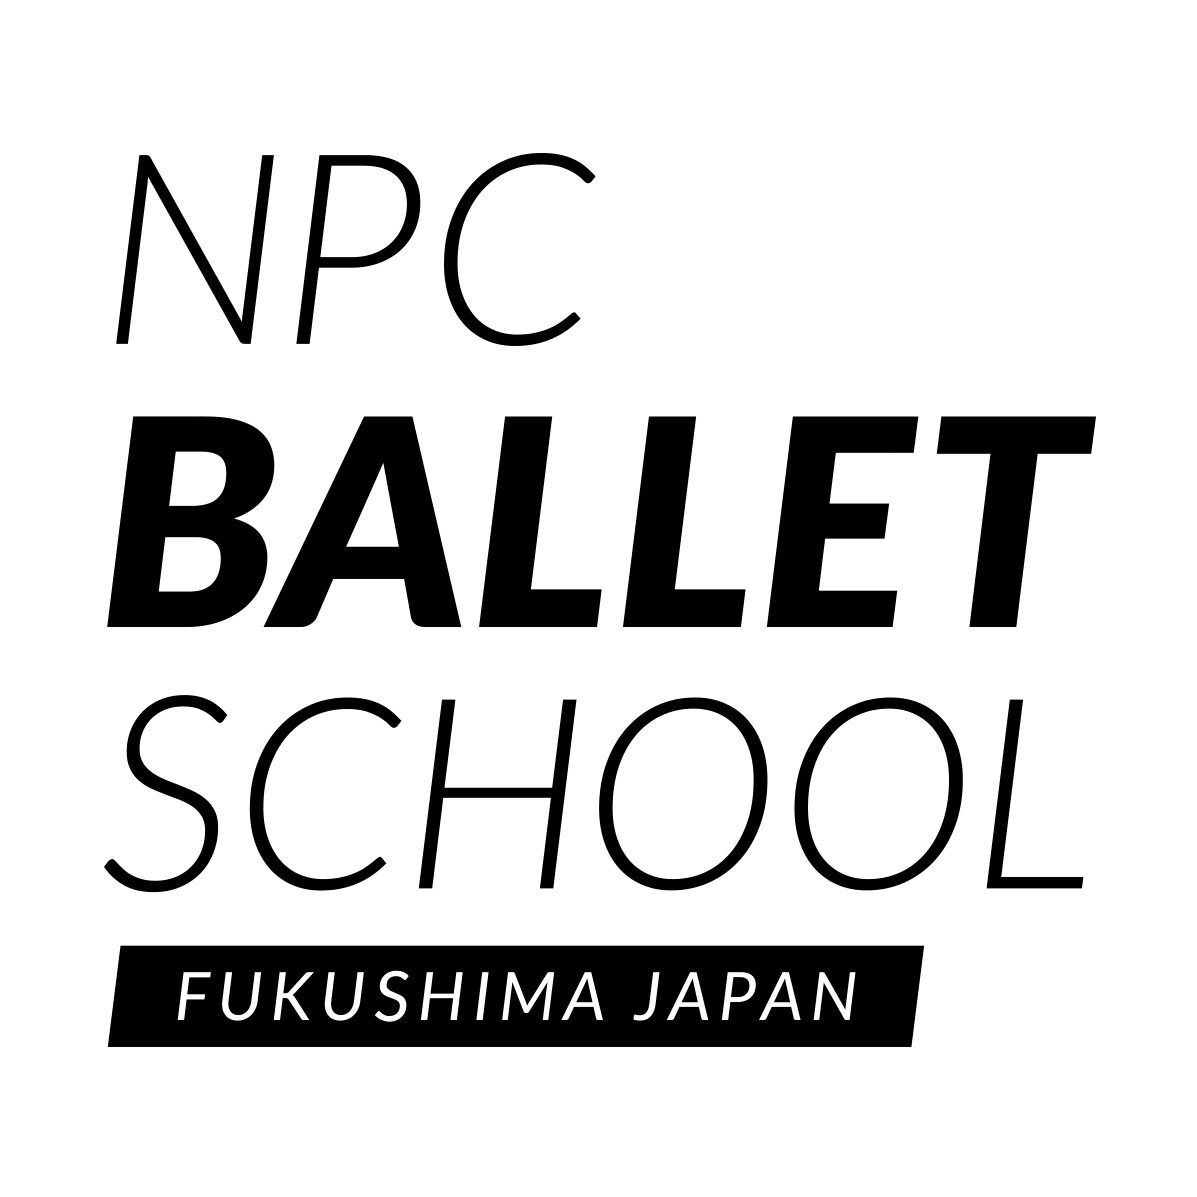 NPC BALLET SCHOOL